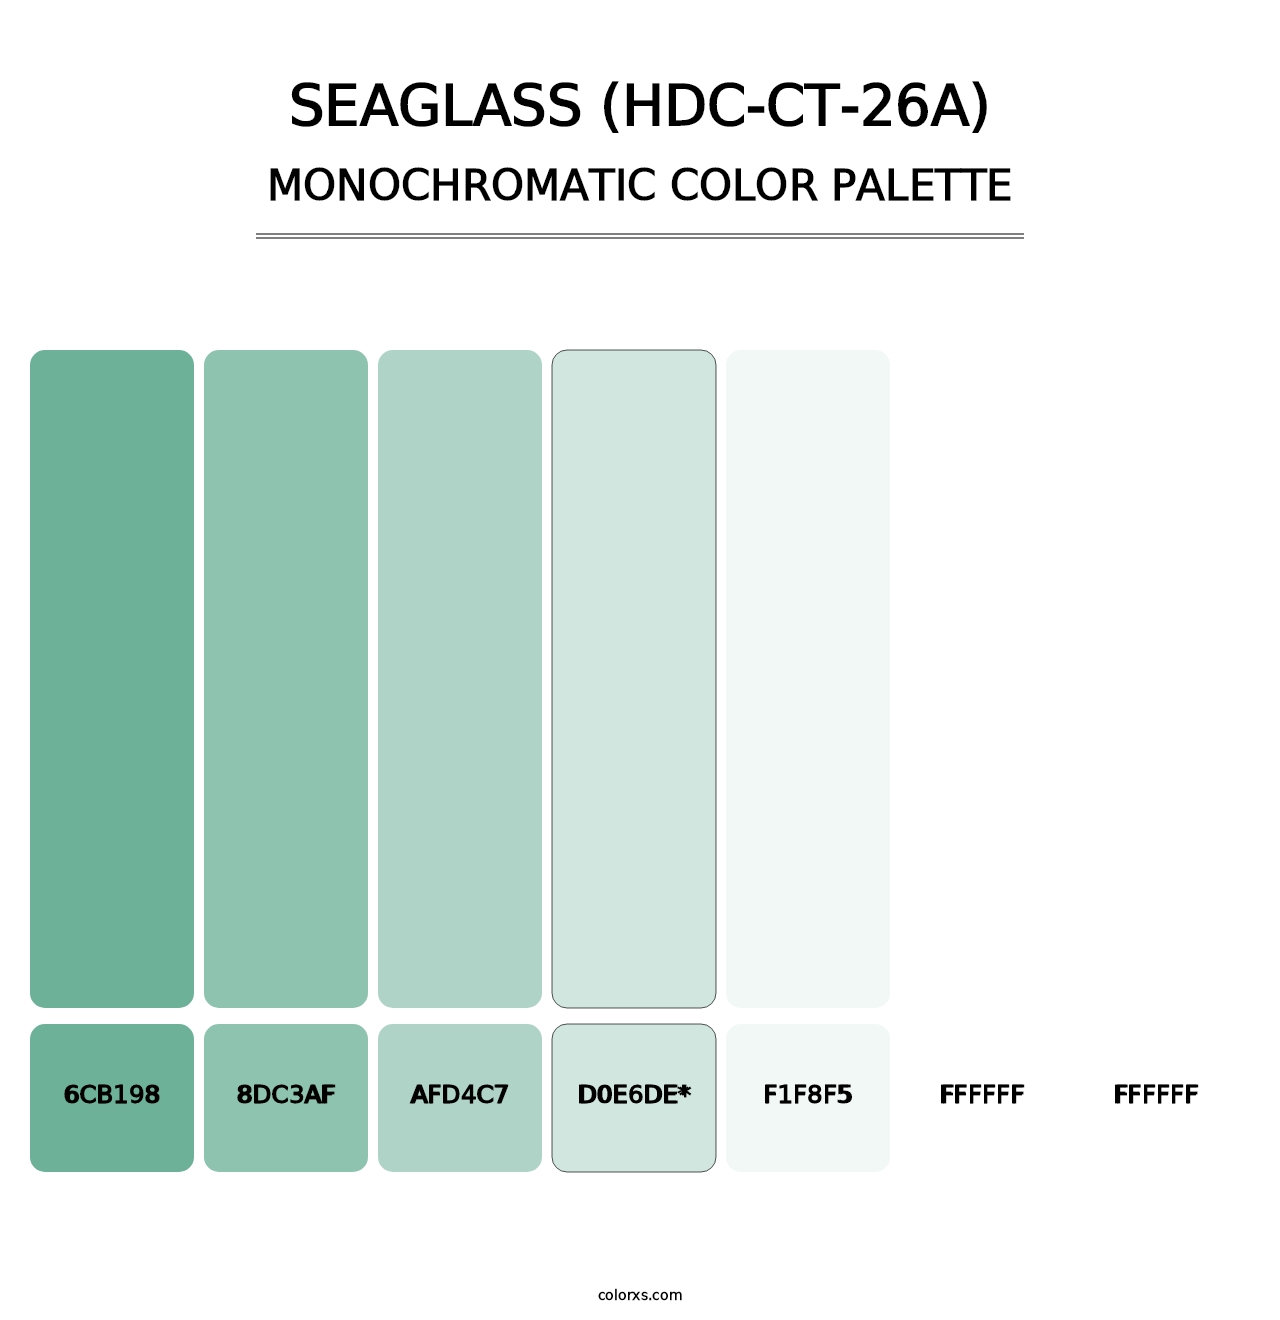 Seaglass (HDC-CT-26A) - Monochromatic Color Palette